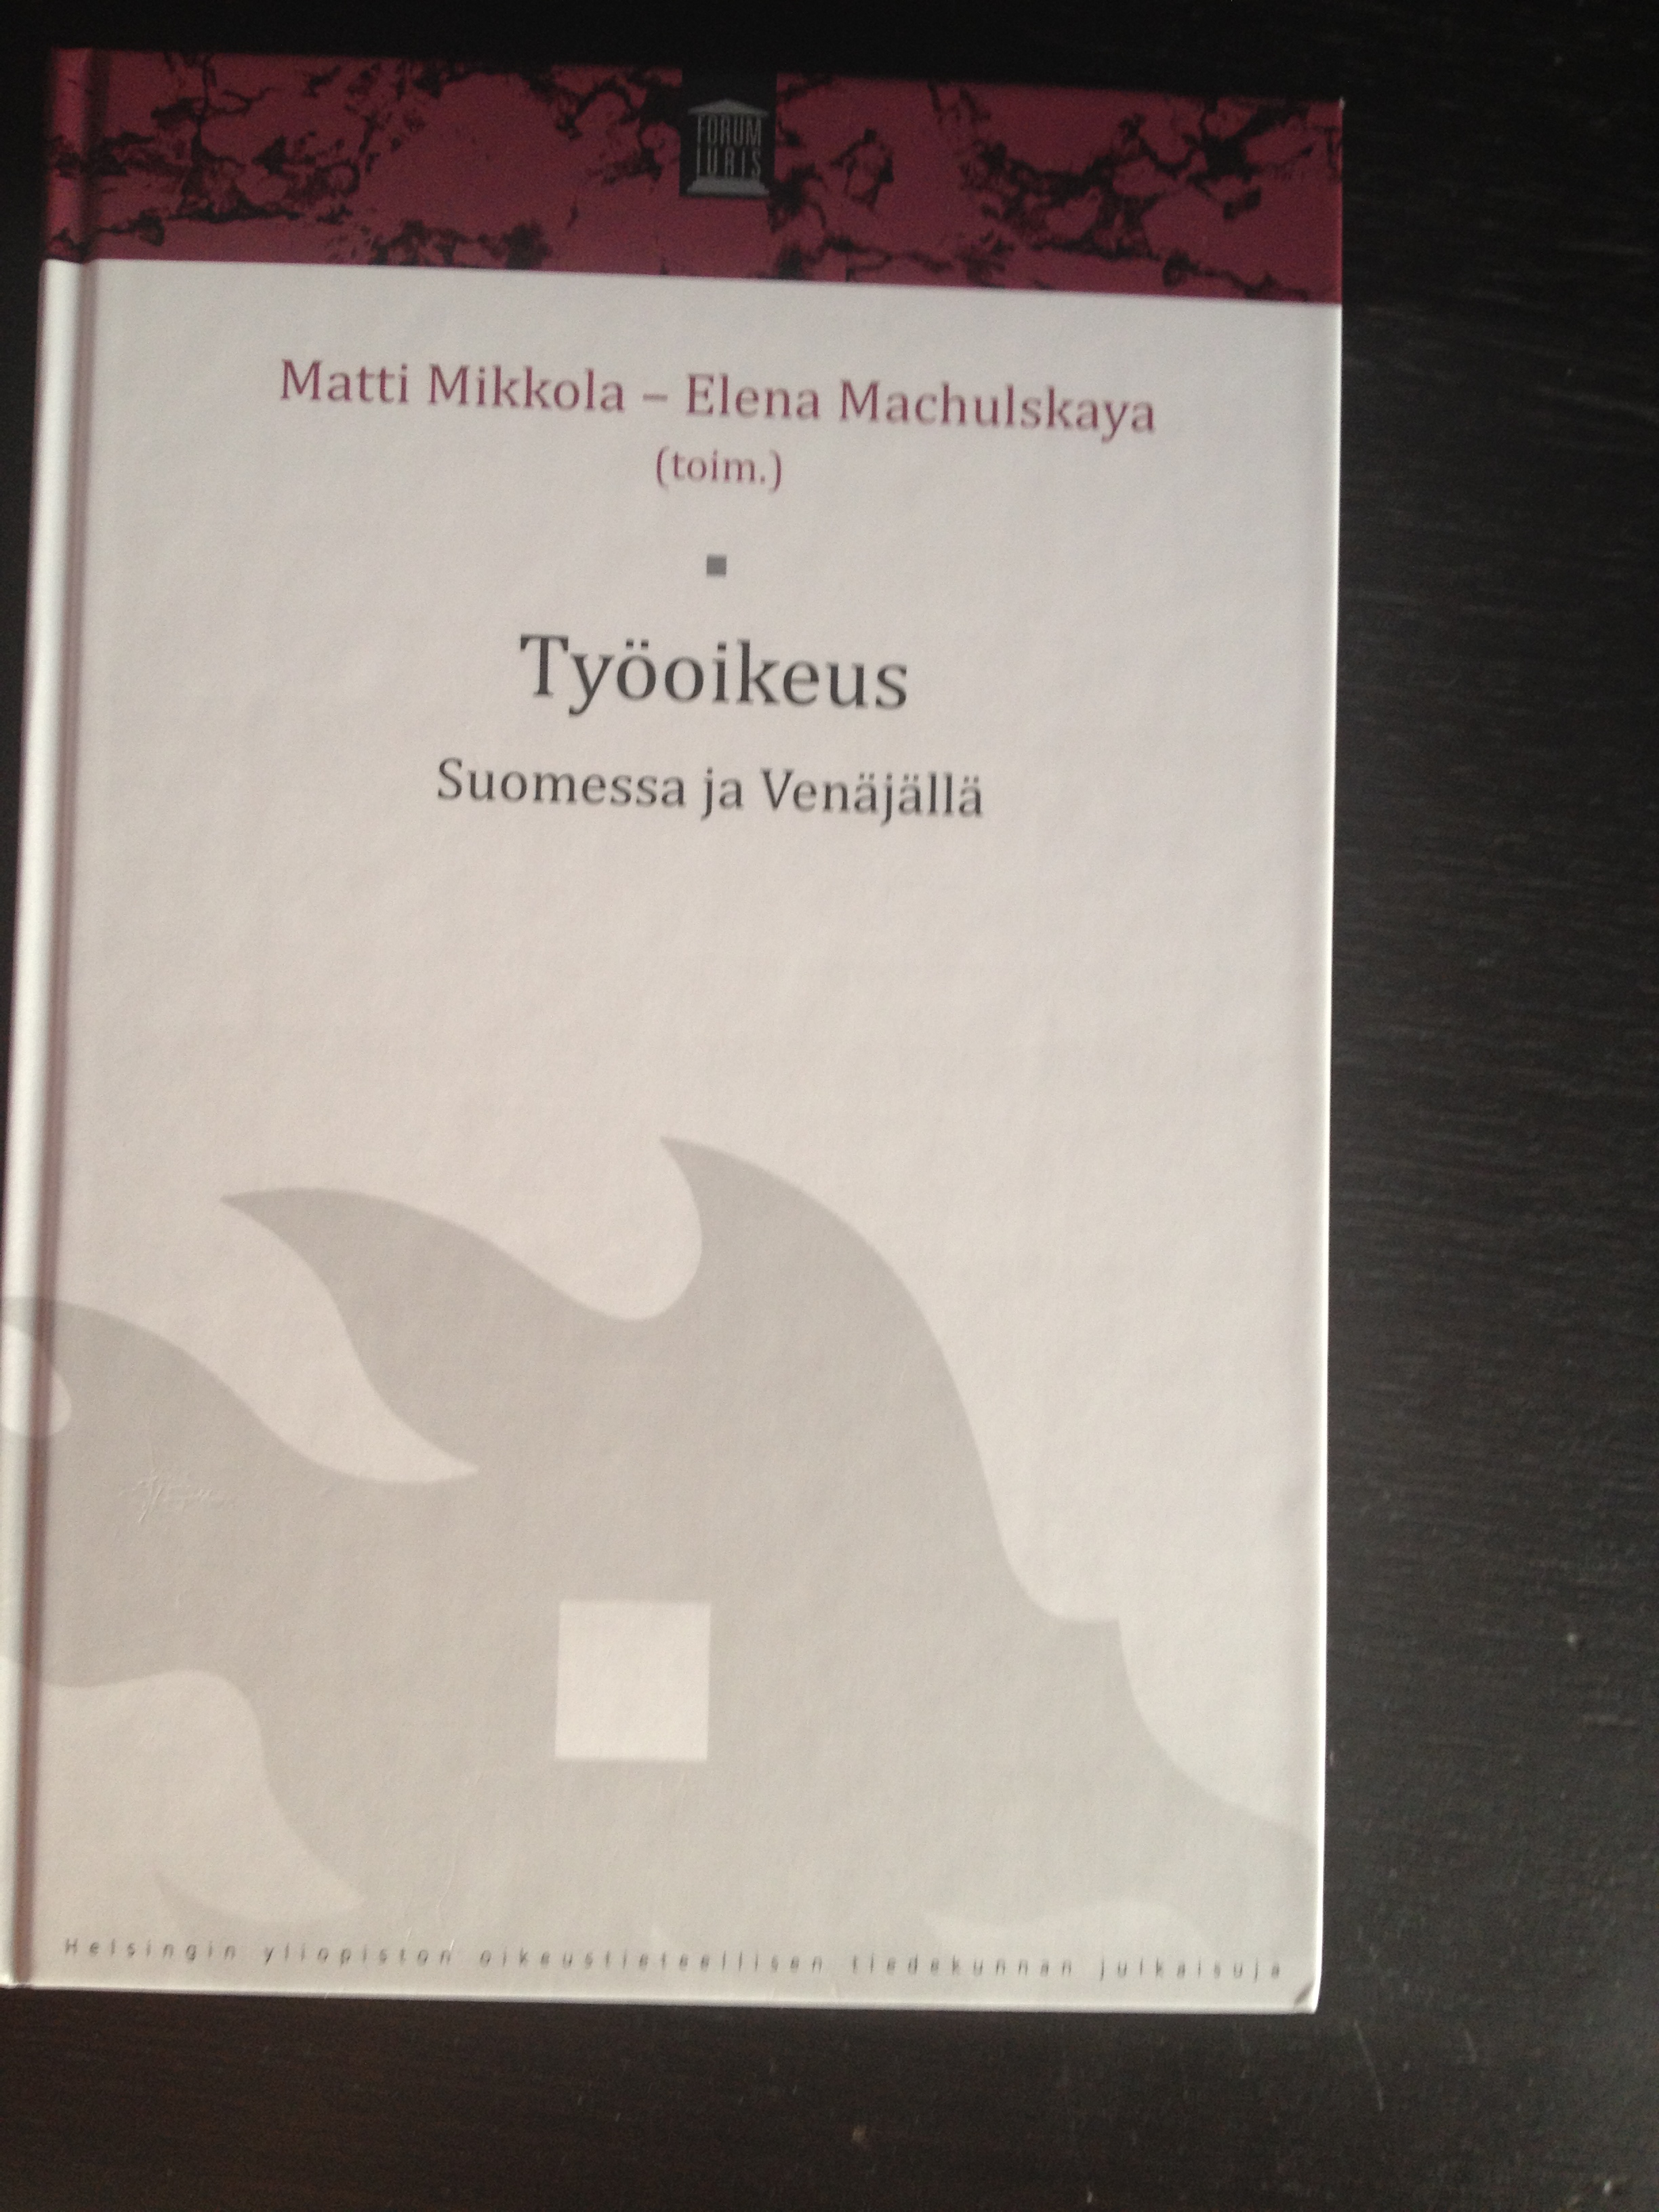 Työoikeus. Suomessa ja Venäjällä. Matti Mikkola – Elena Machulskaya (toim.)